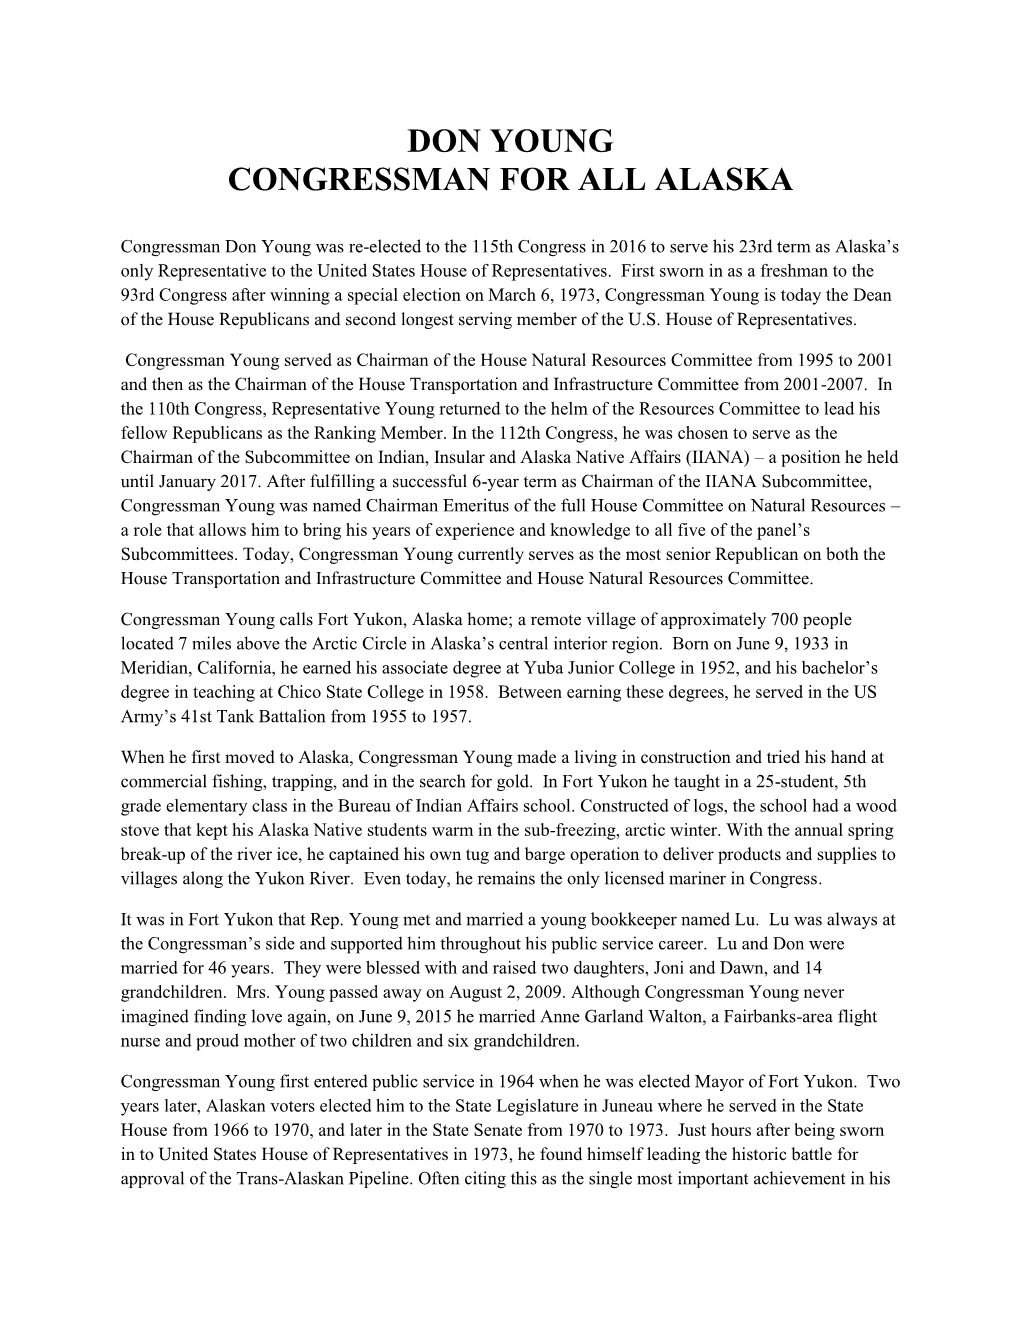 Don Young Congressman for All Alaska